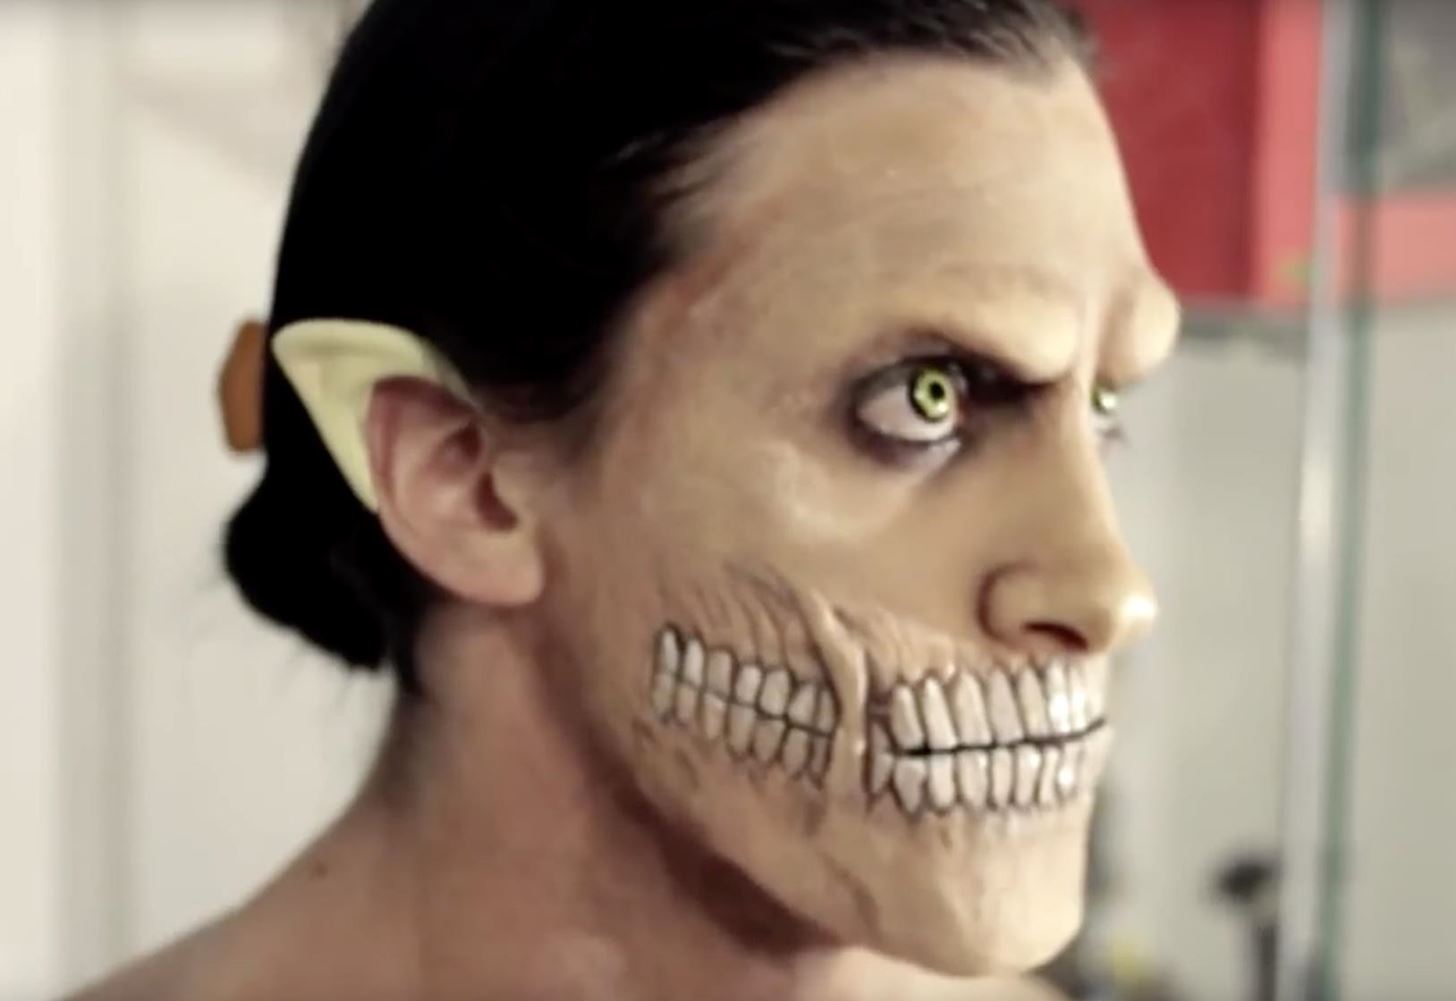 Attack on Titan: DIY Eren Jaeger Makeup Effects for Halloween